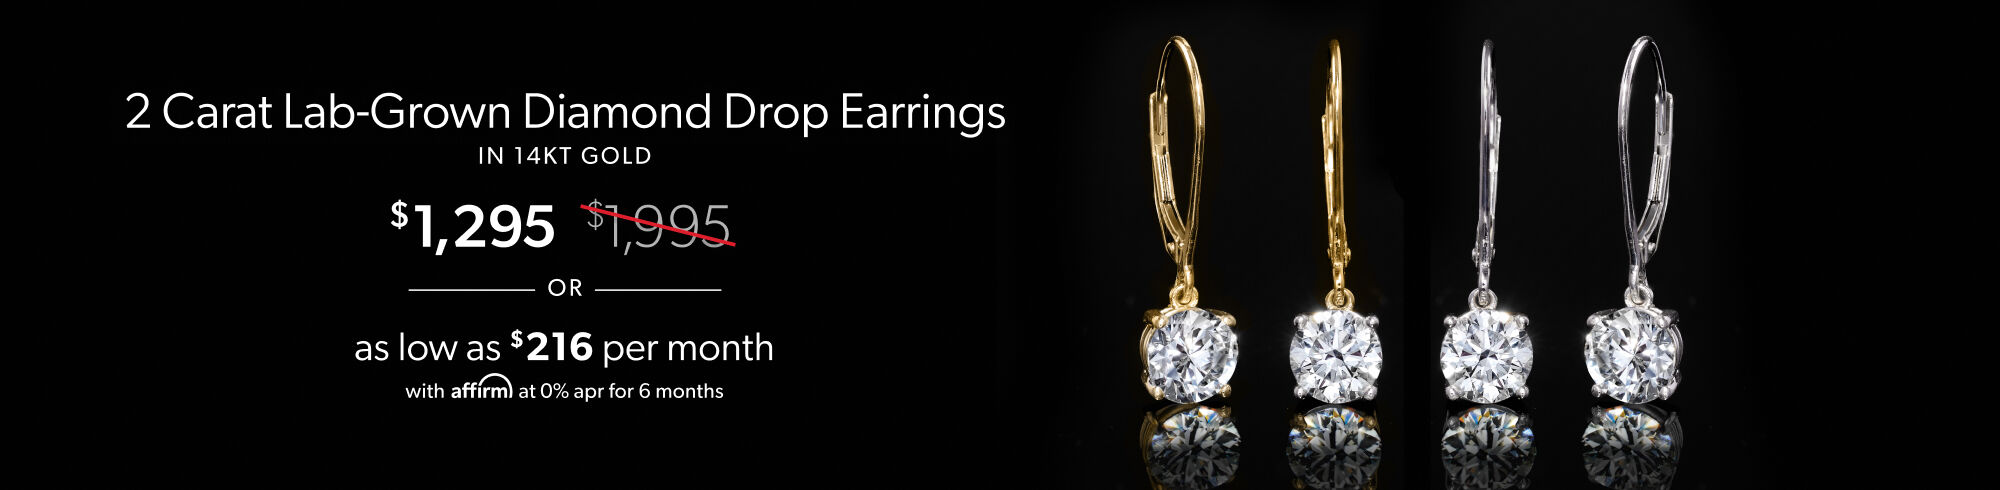 2 Carat Lab-Grown Diamond Drop Earrings in 14kt Gold